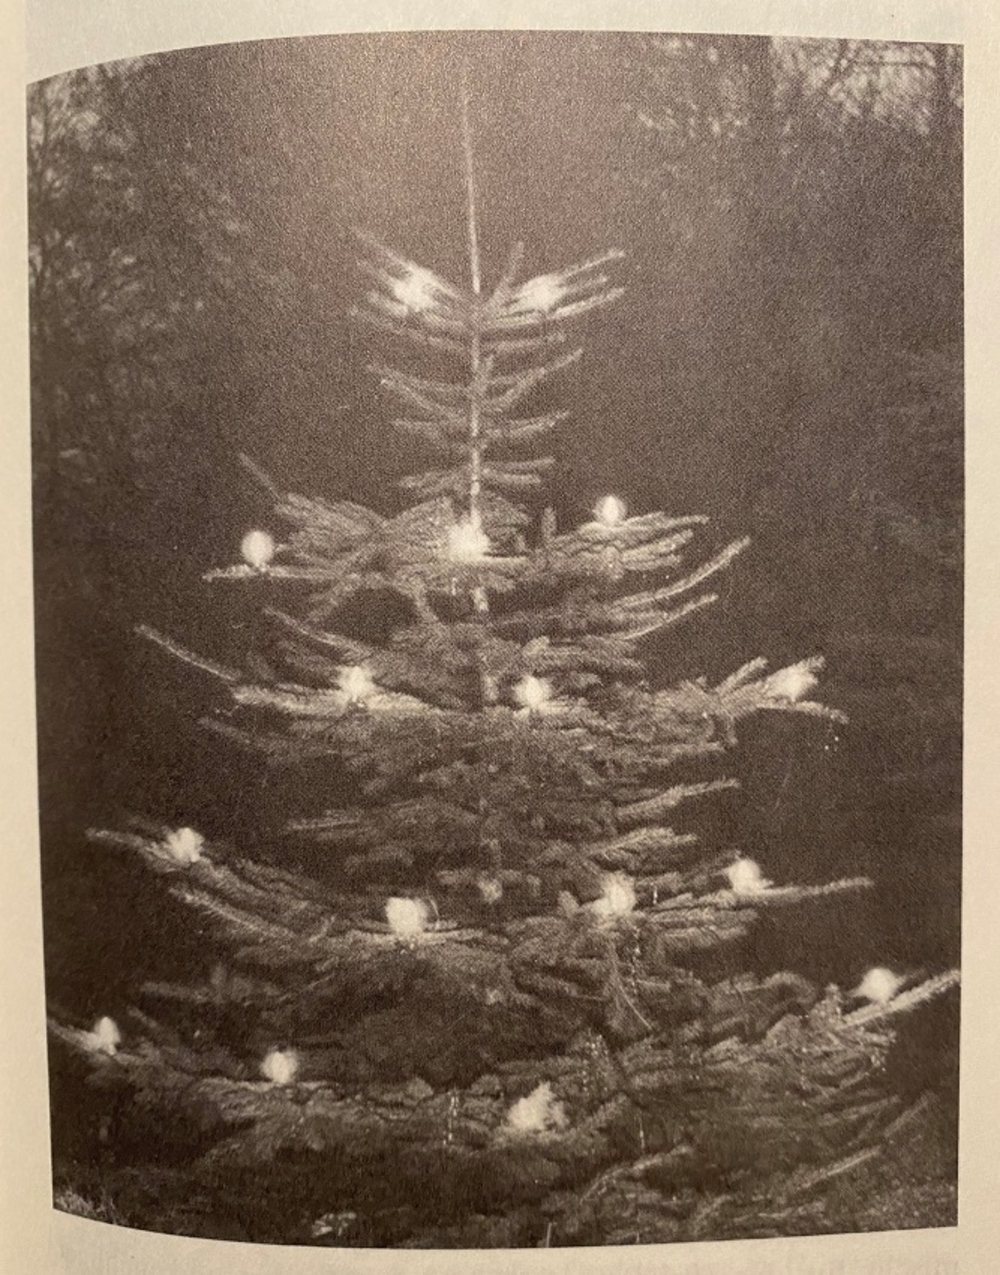 Der Tannenbaum dürfte bei ab 1850 als Christbaum bekannt sein. 